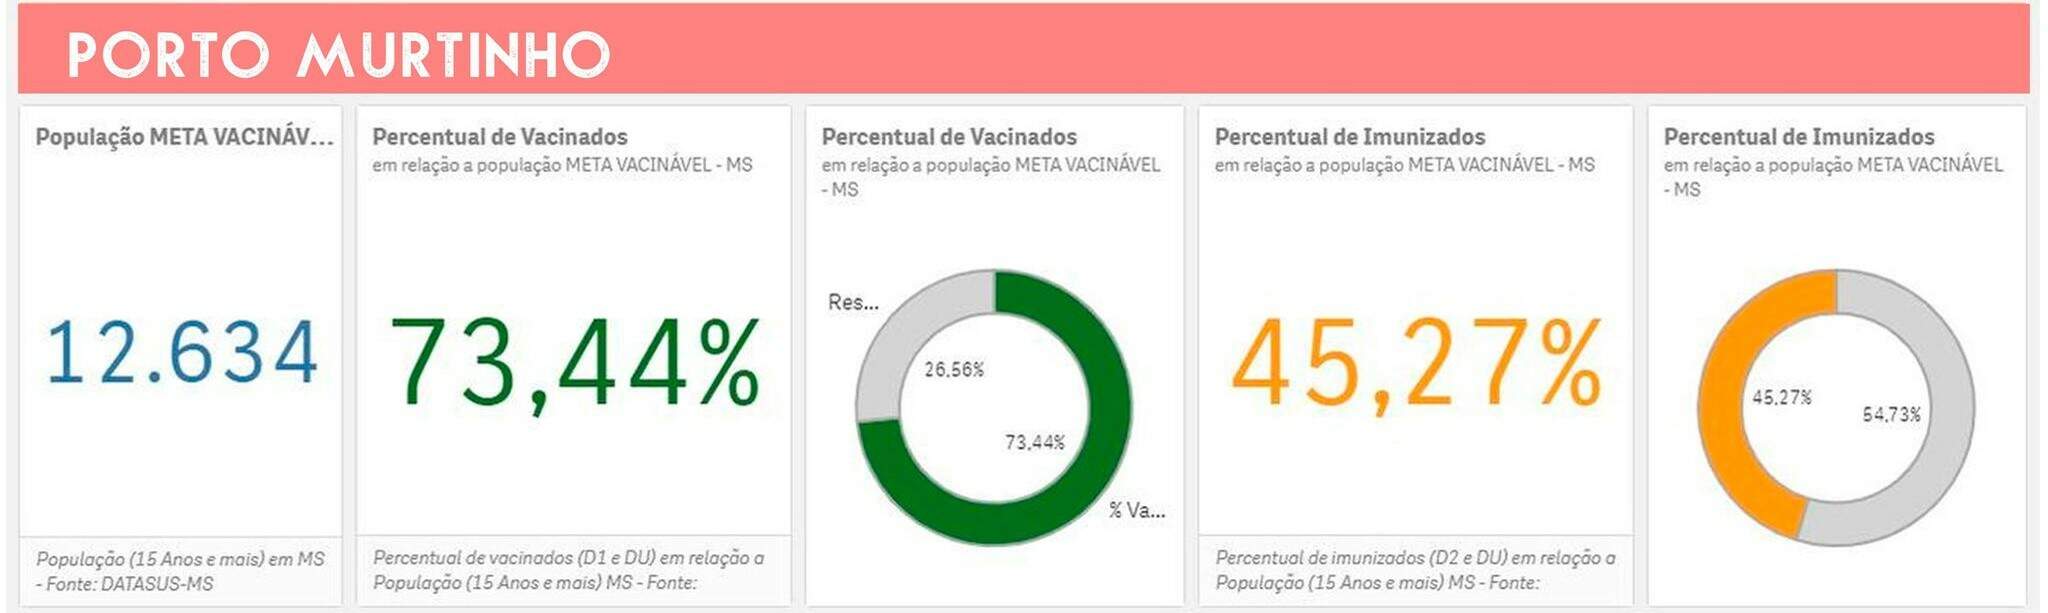 porto murtinho NQkJmpn - Vacinação em massa: cobertura variou de 105% a 73% nas cidades do estudo em MS